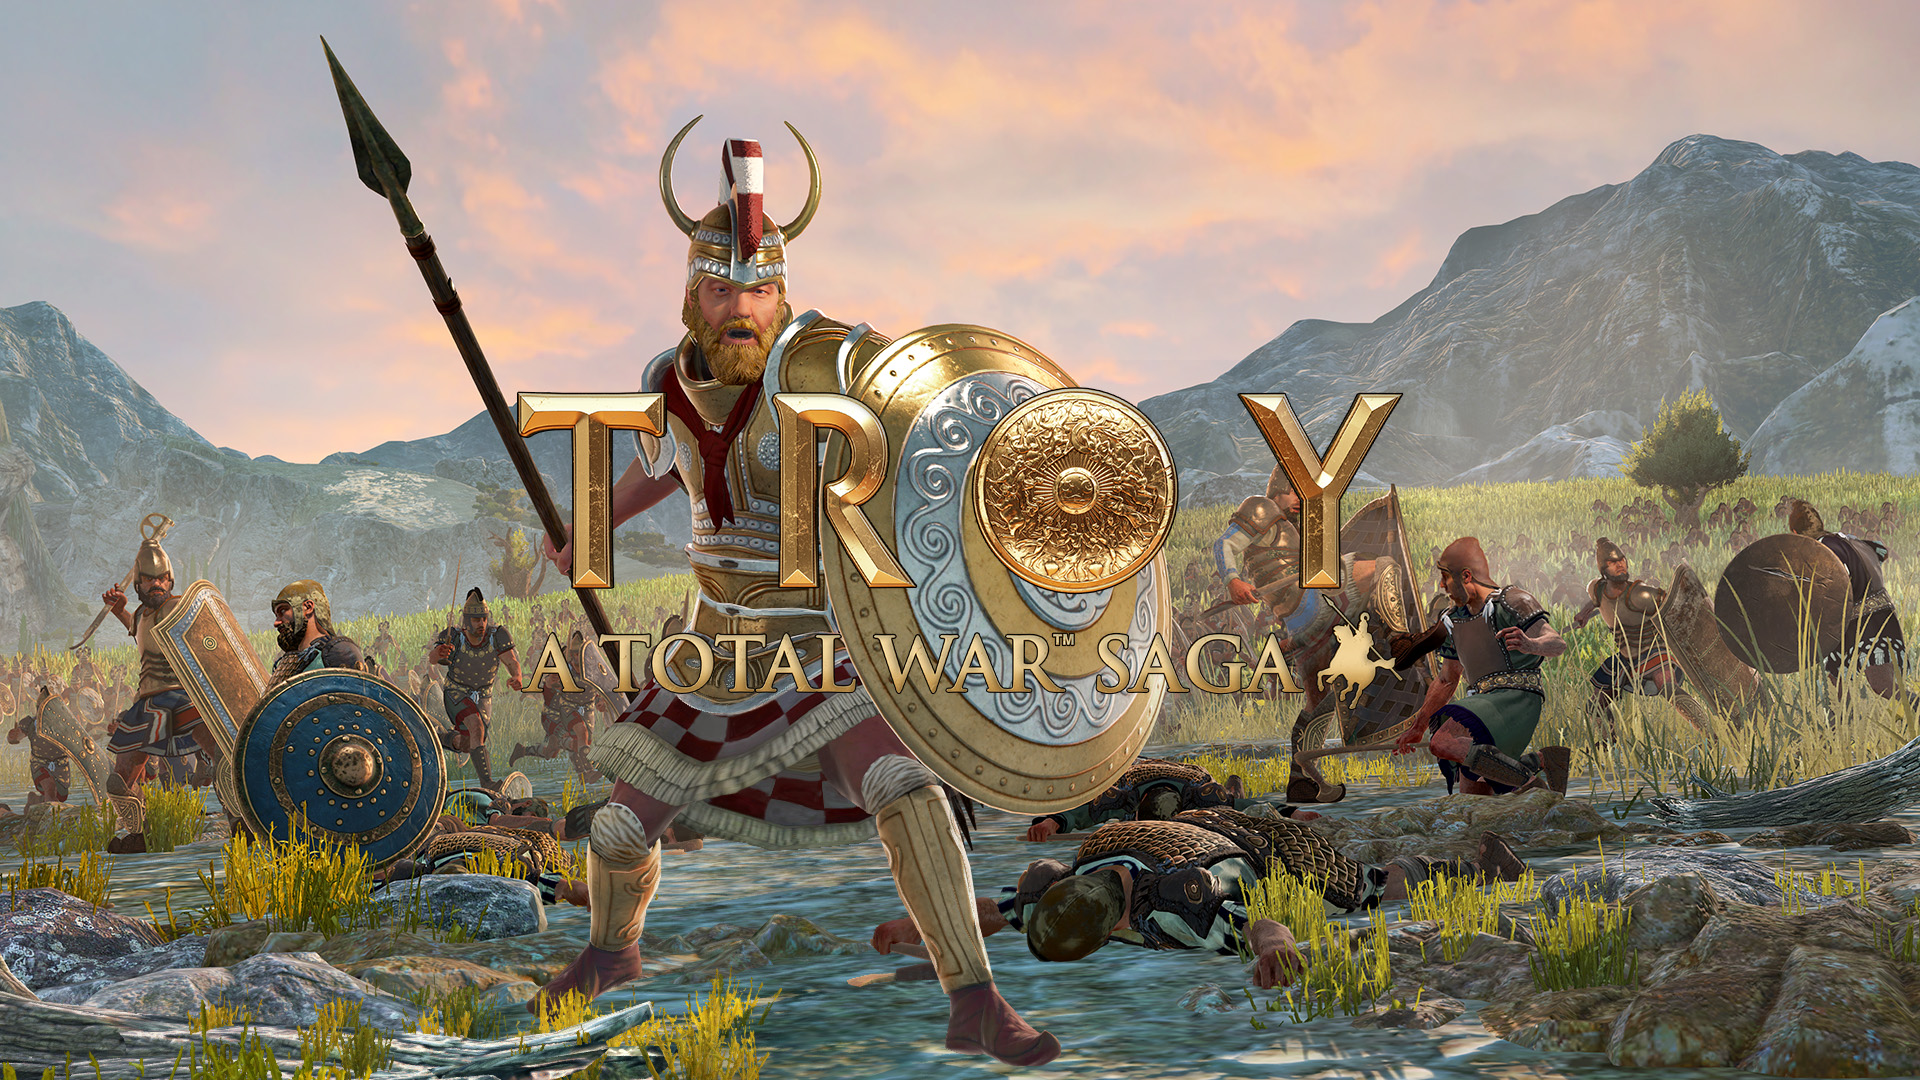 troy total war saga download free